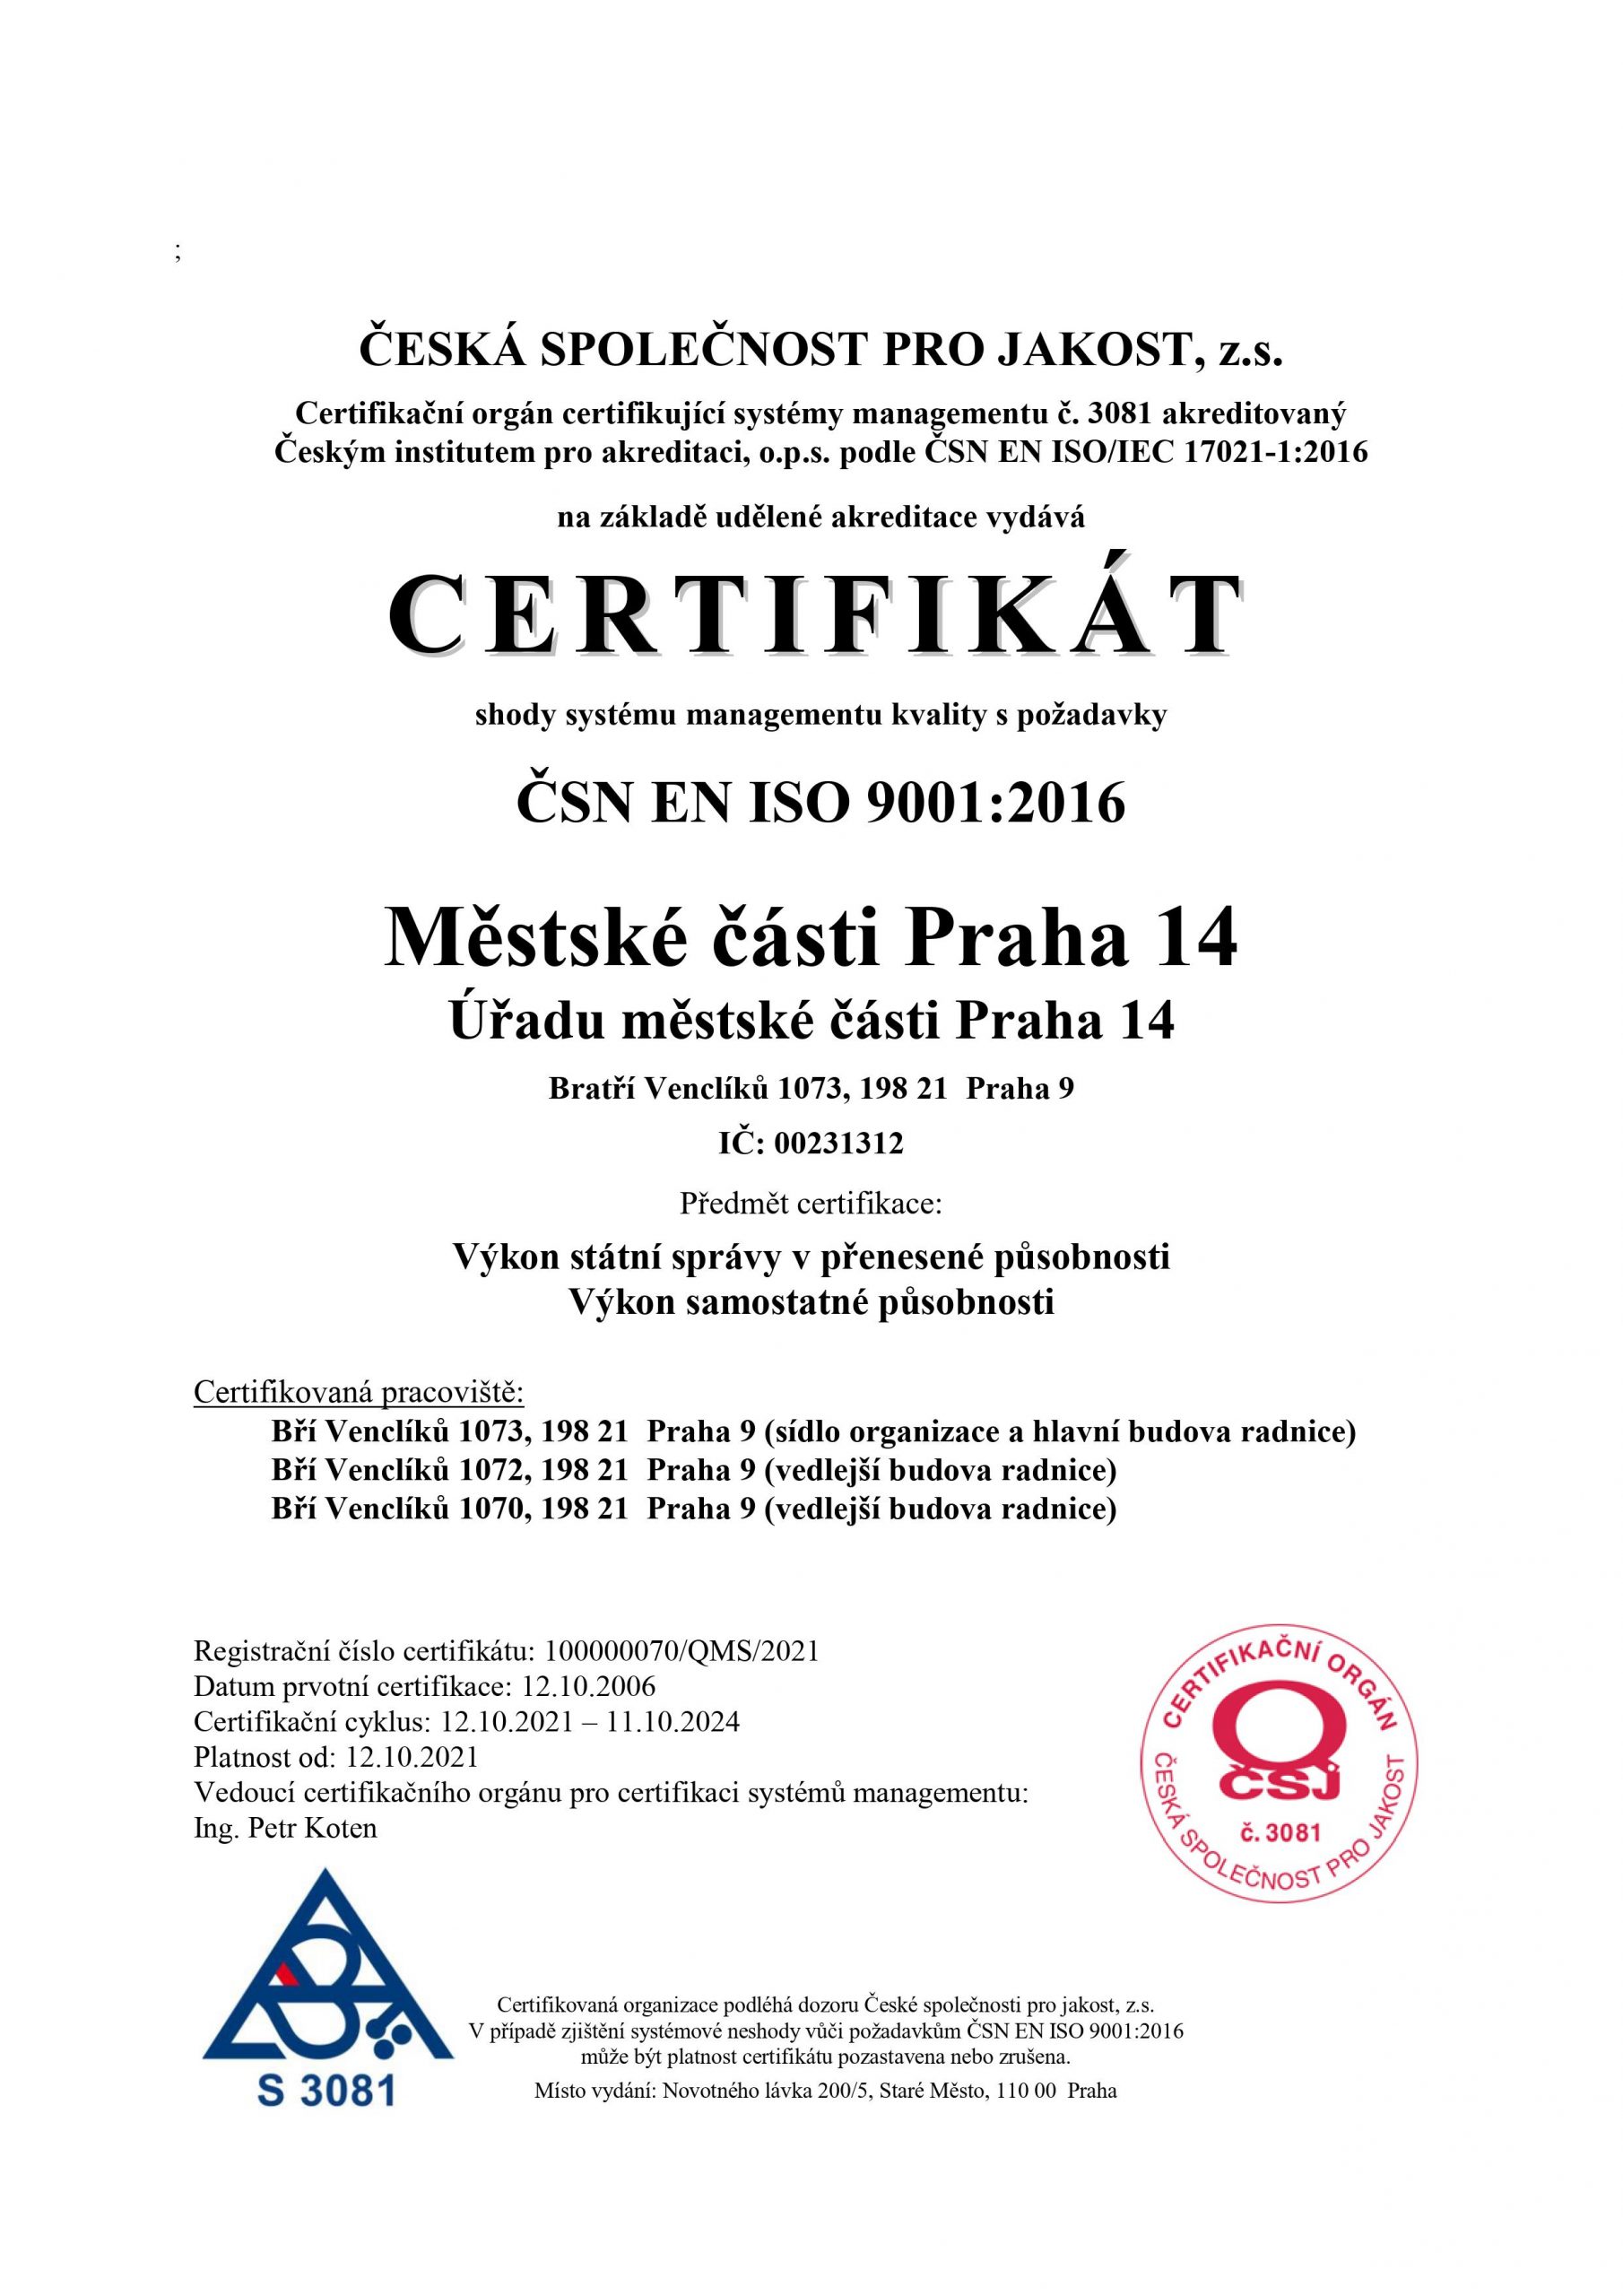 Certifikát shody systému managementu kvality s požadavky ČSN EN ISO 9001:2016